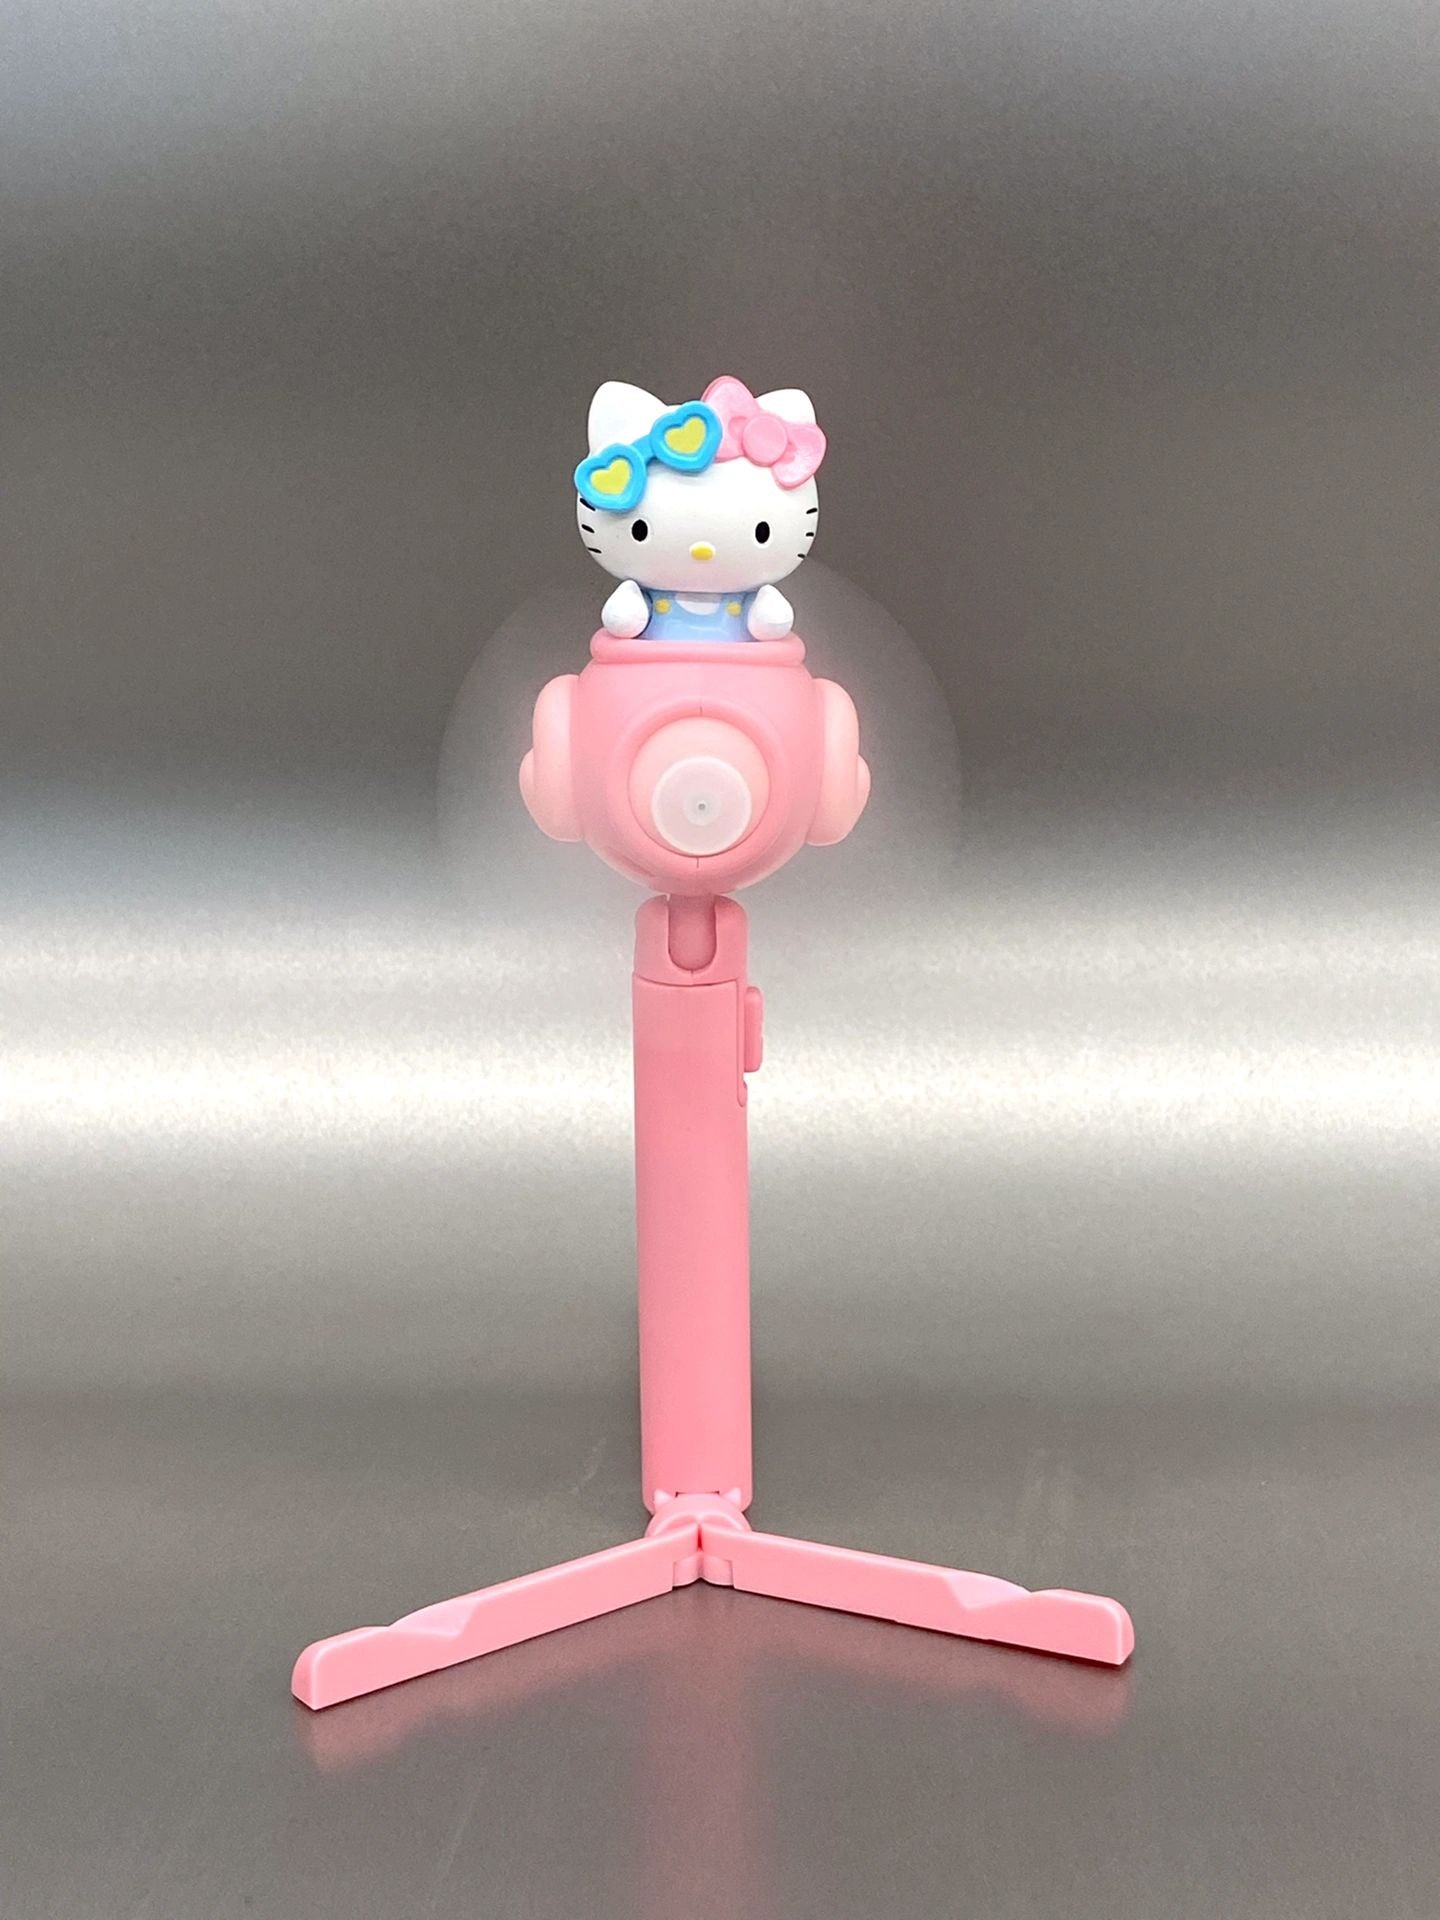 Sanrio Handheld Fan Portable, Mini Hand Held Fan  Personal Desk Table Fan with Base for Women Girls Kids Outdoor